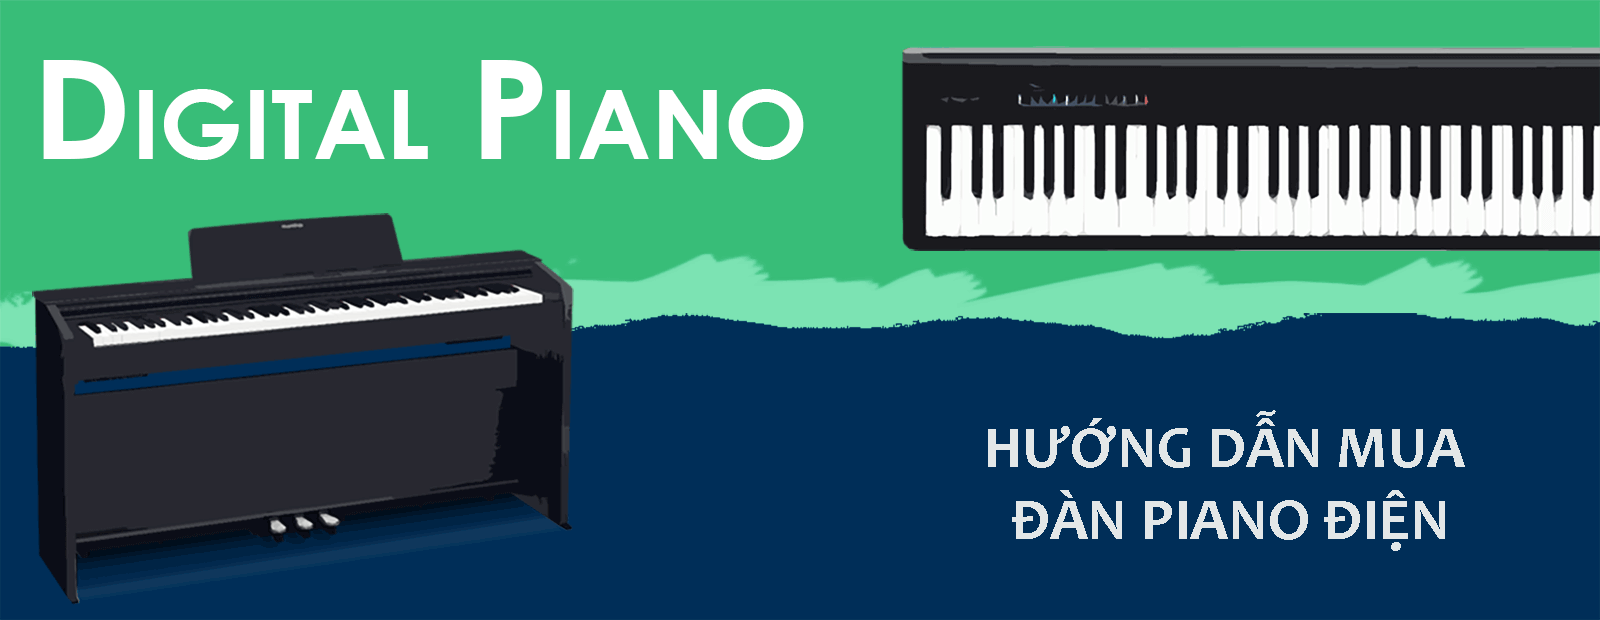 huong-dan-mua-dan-piano-dien